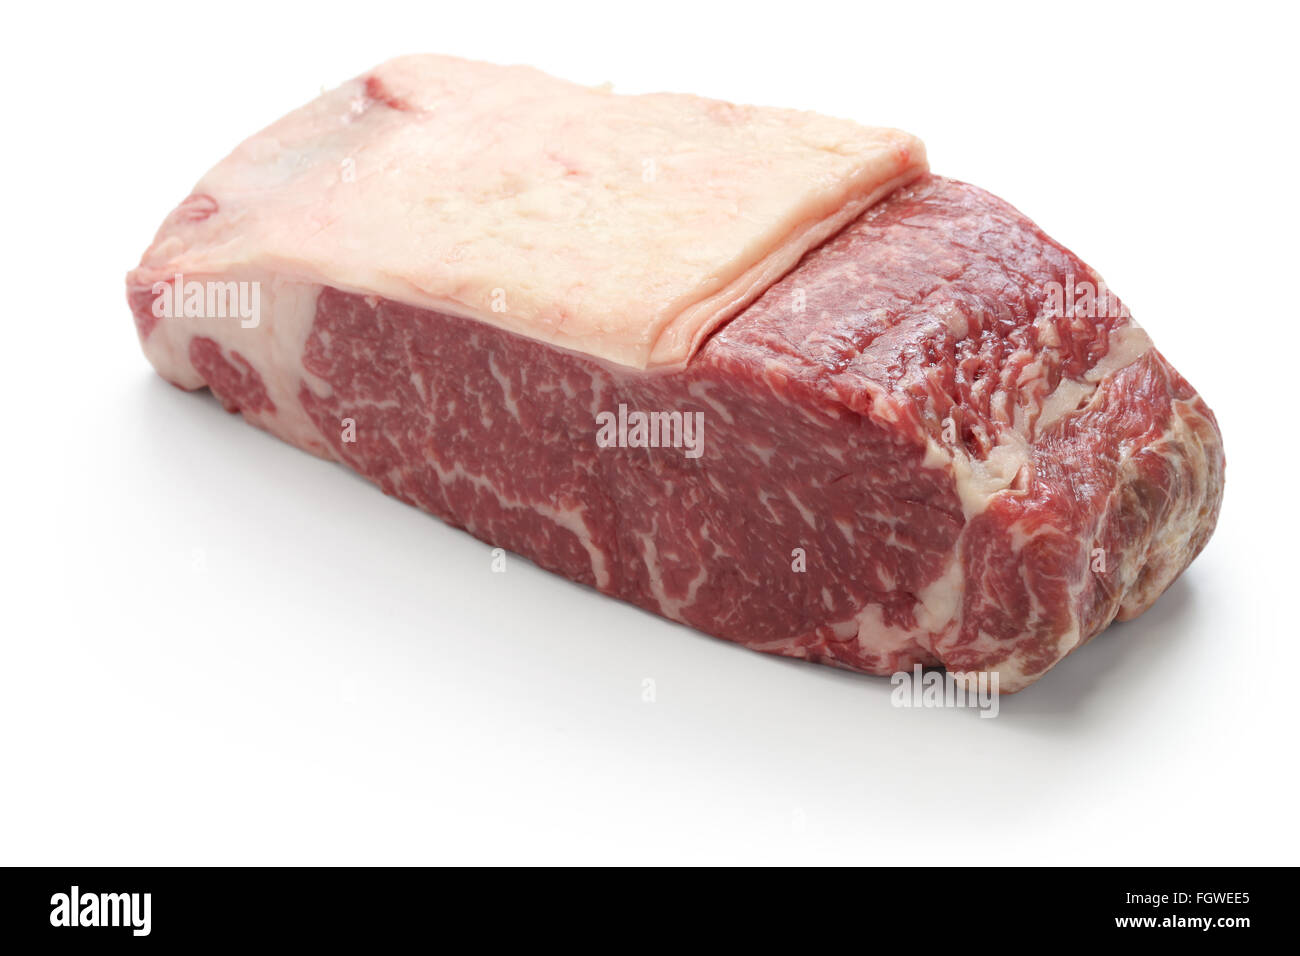 japanese wagyu sirloin steak isolated on white background Stock Photo